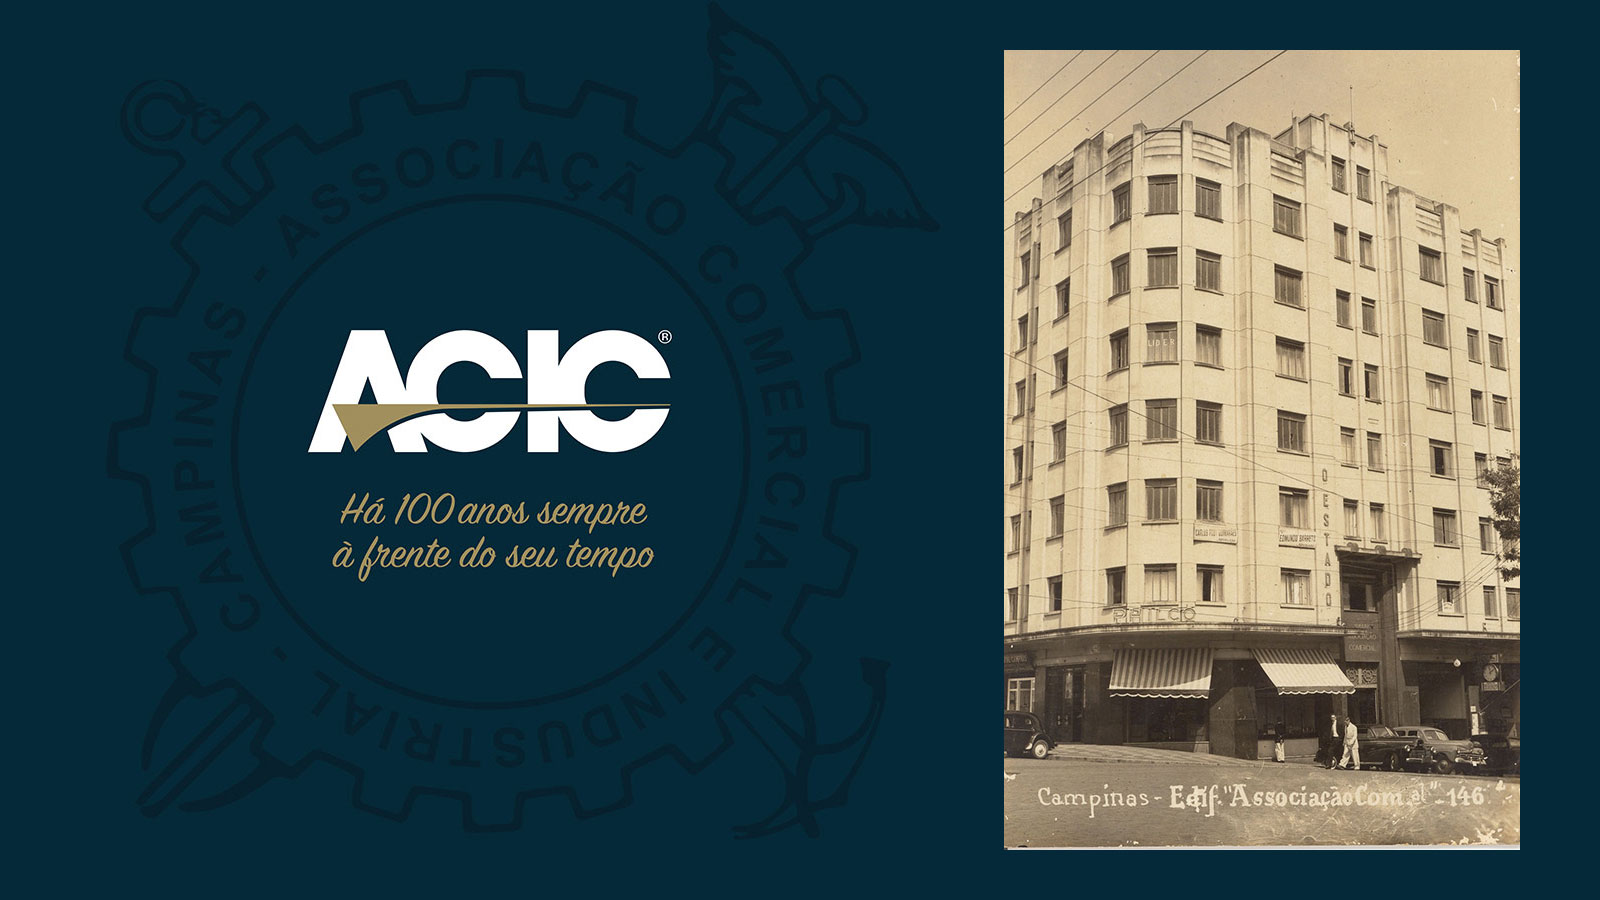 ACIC - Foto montagem do logotipo e prédio da associação